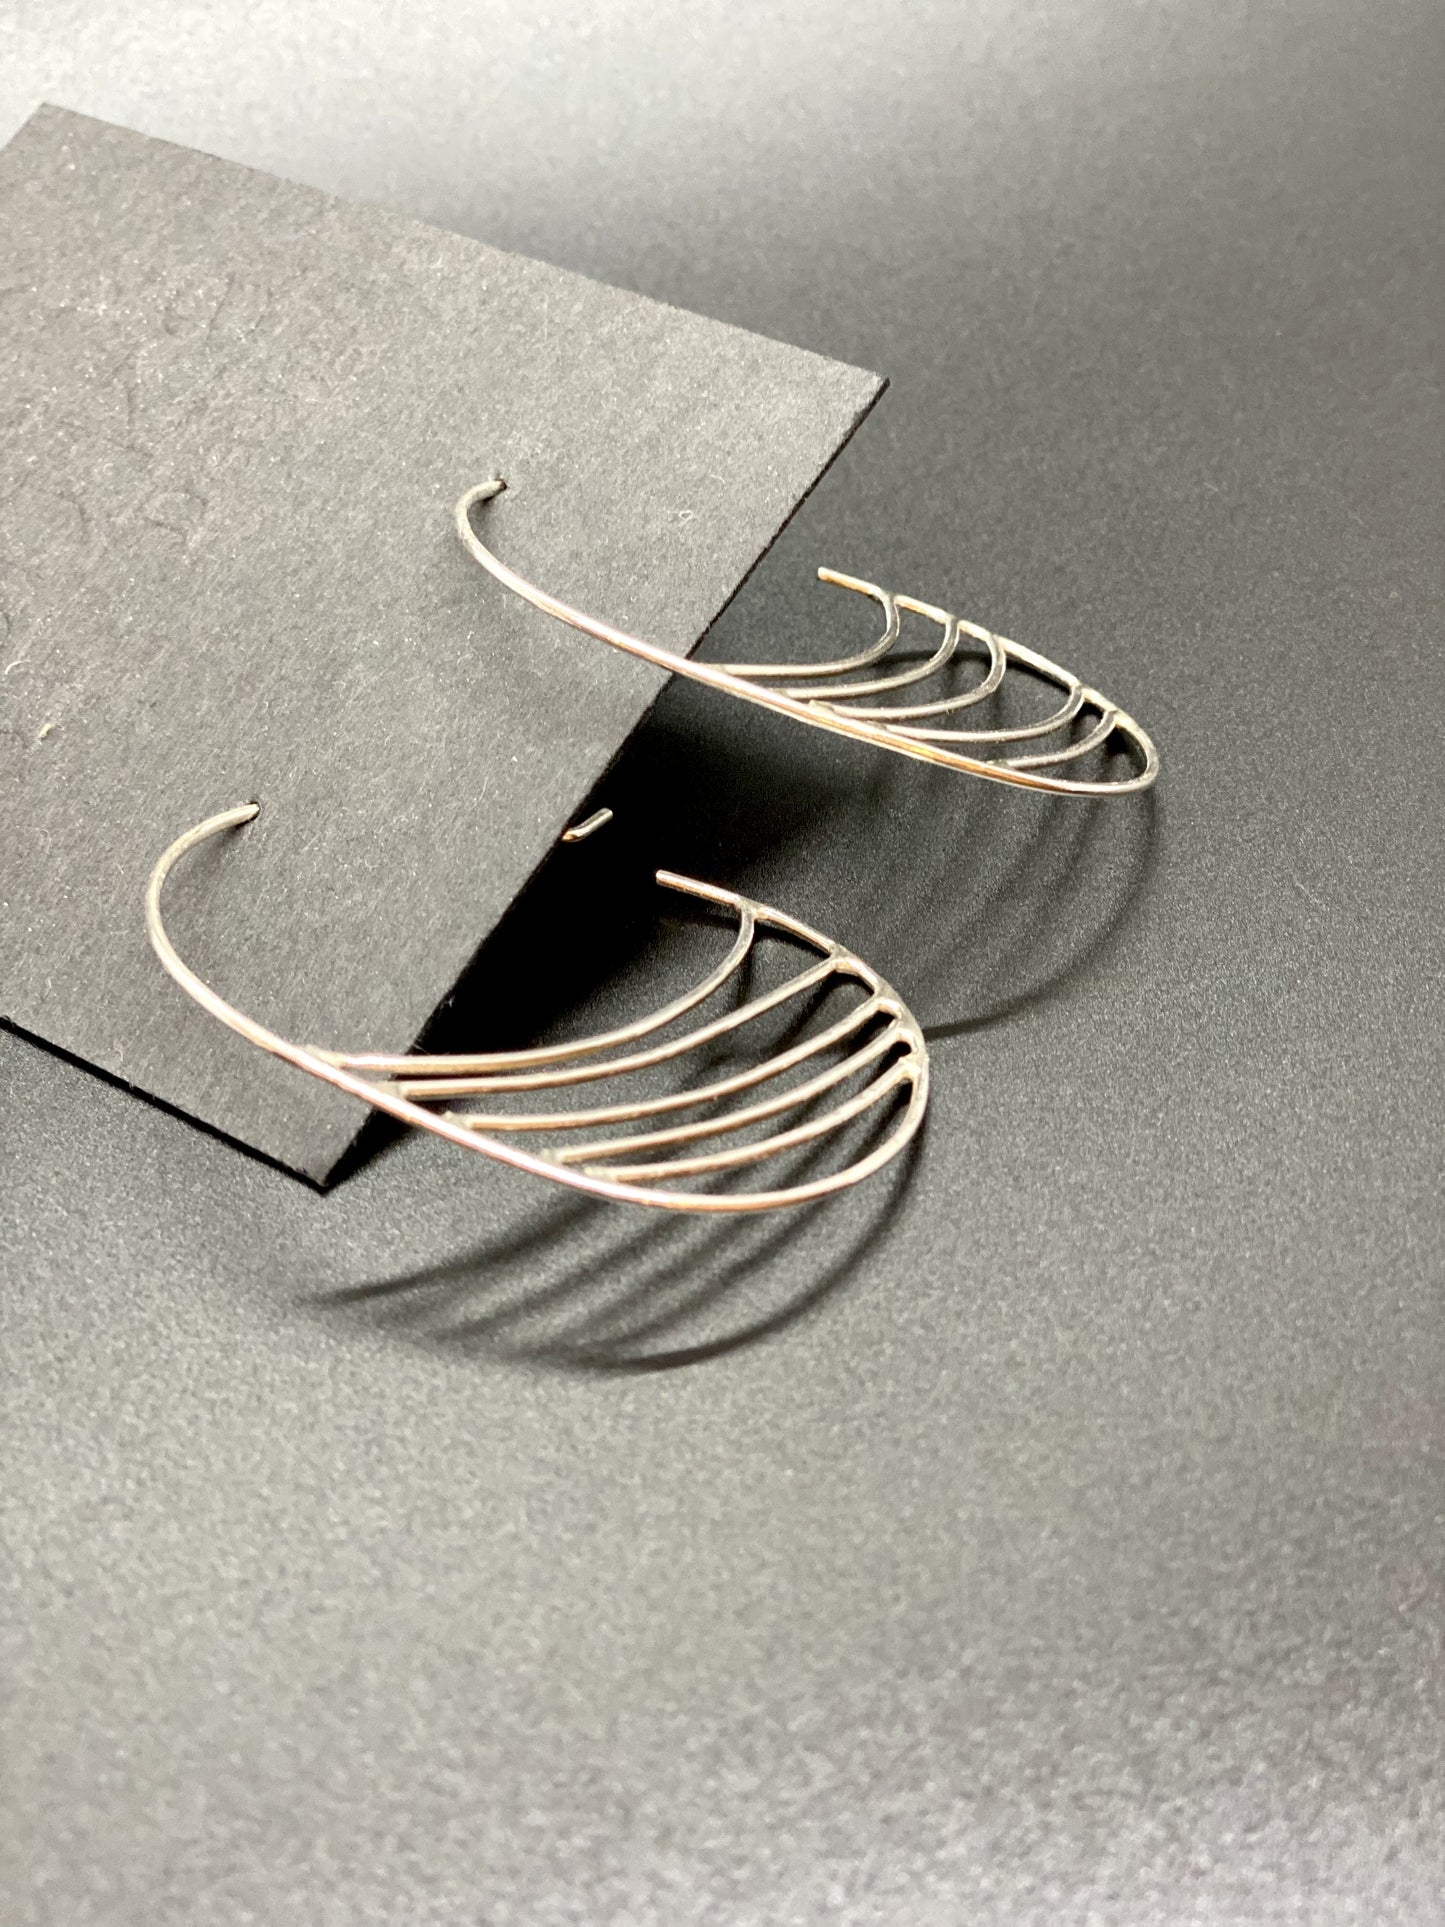 Silver 3/4 Hoop Earrings with Curves (#134)